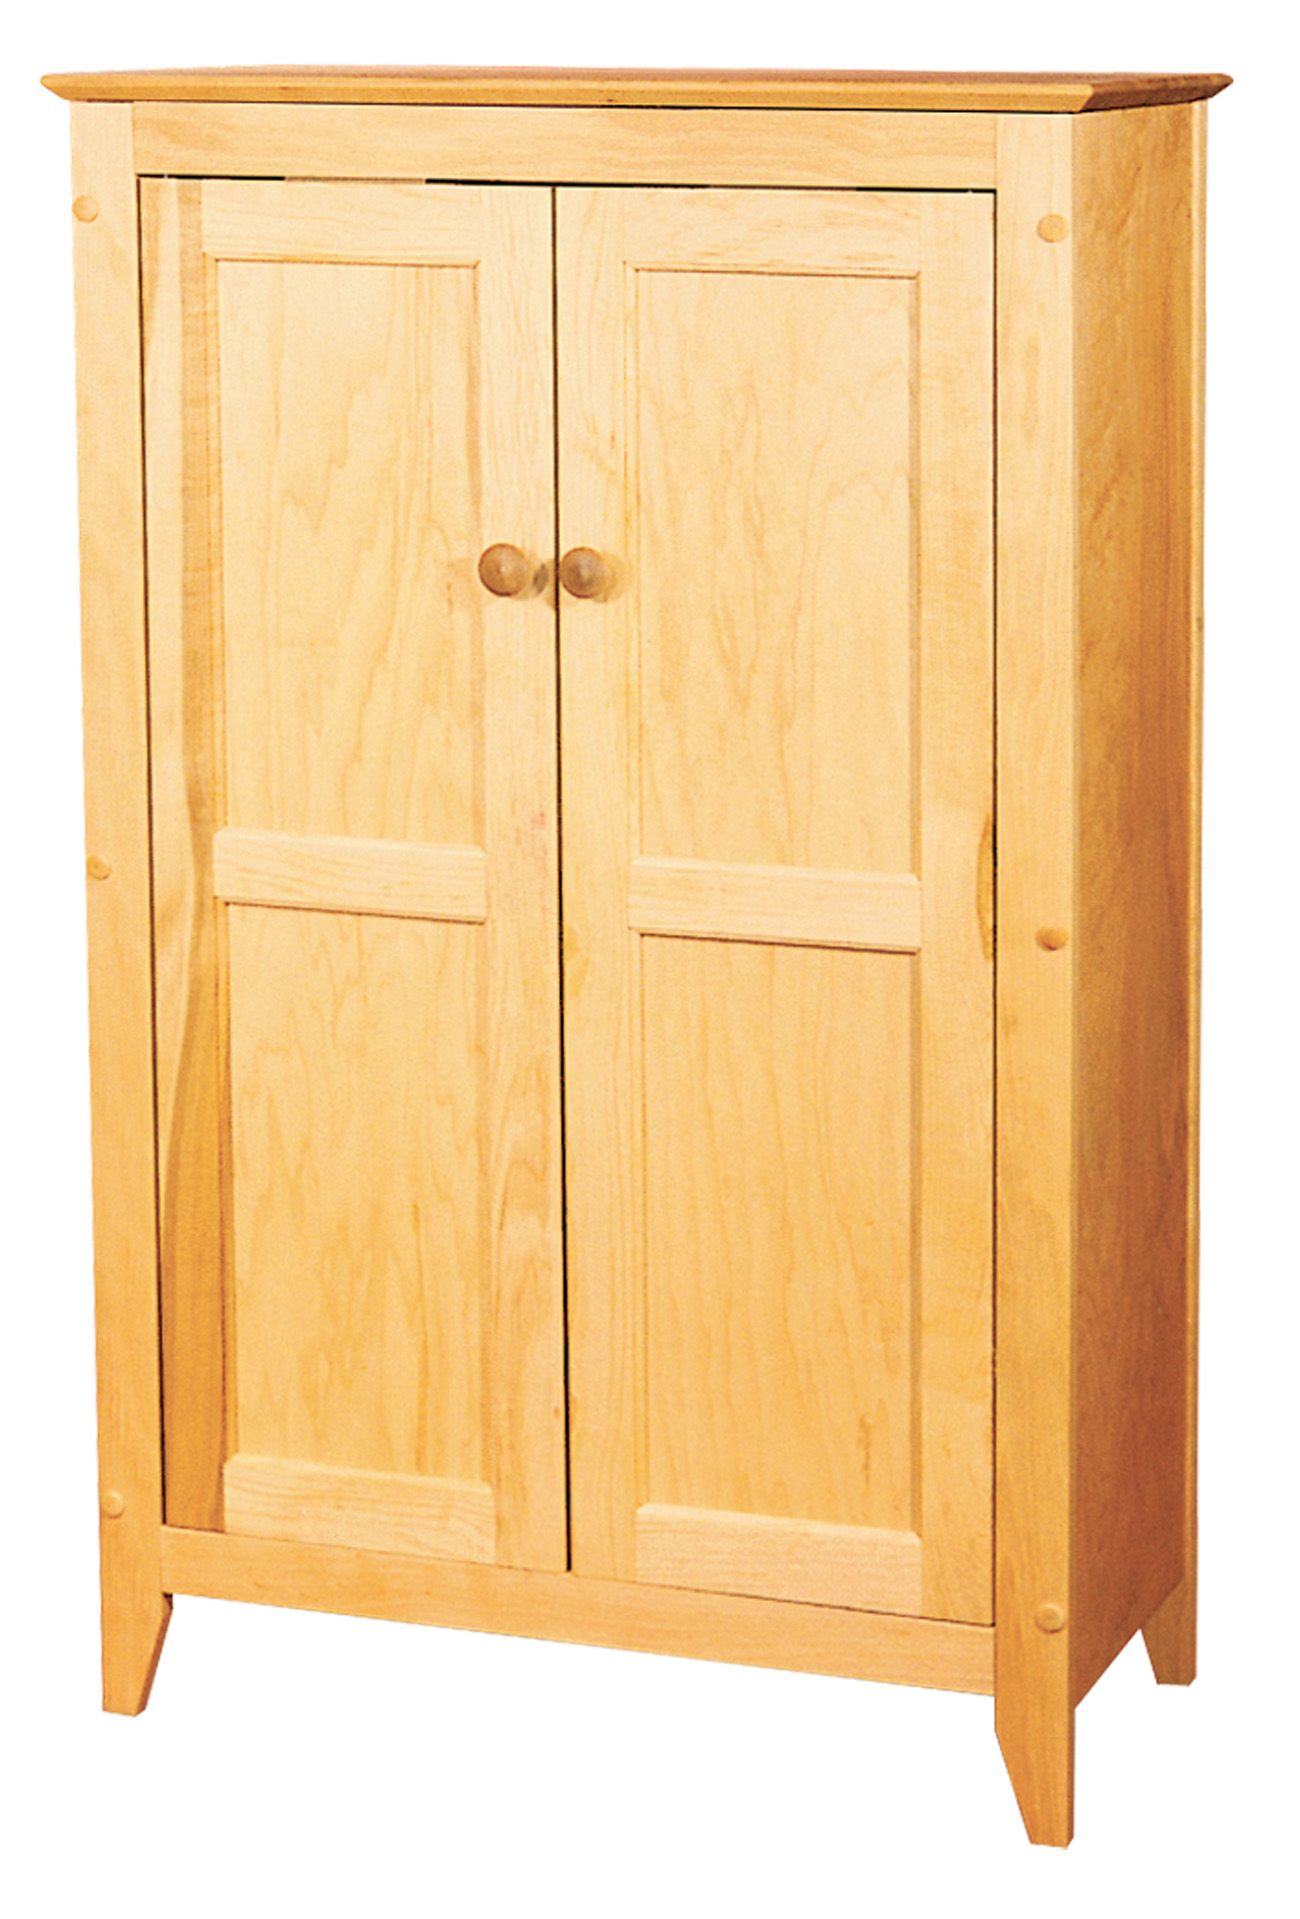 Catskill Craftsmen Double Door Storage Cabinet Model 7230